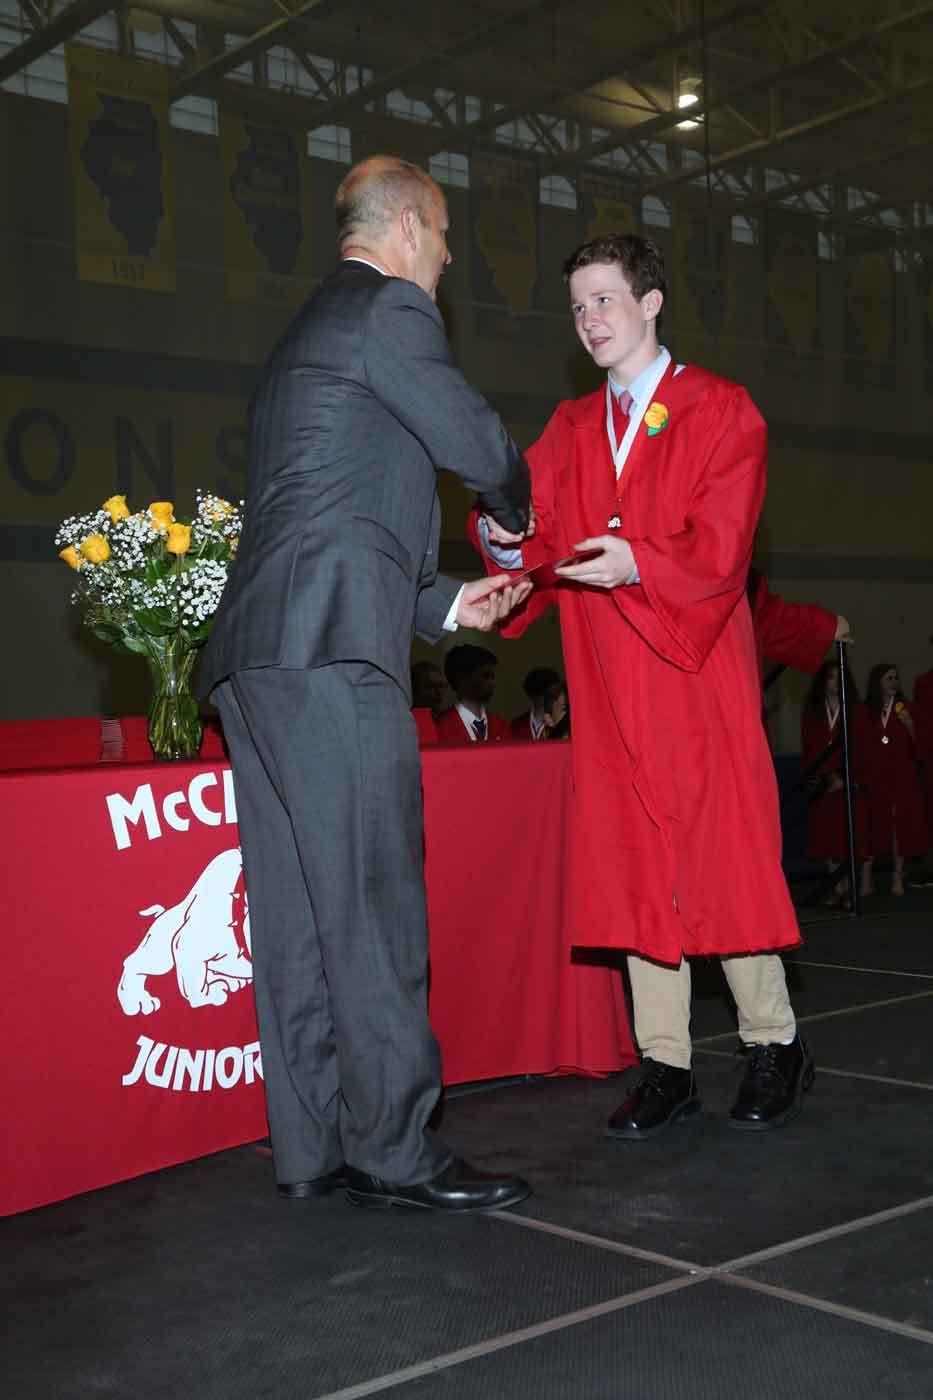 Boy receiving diploma